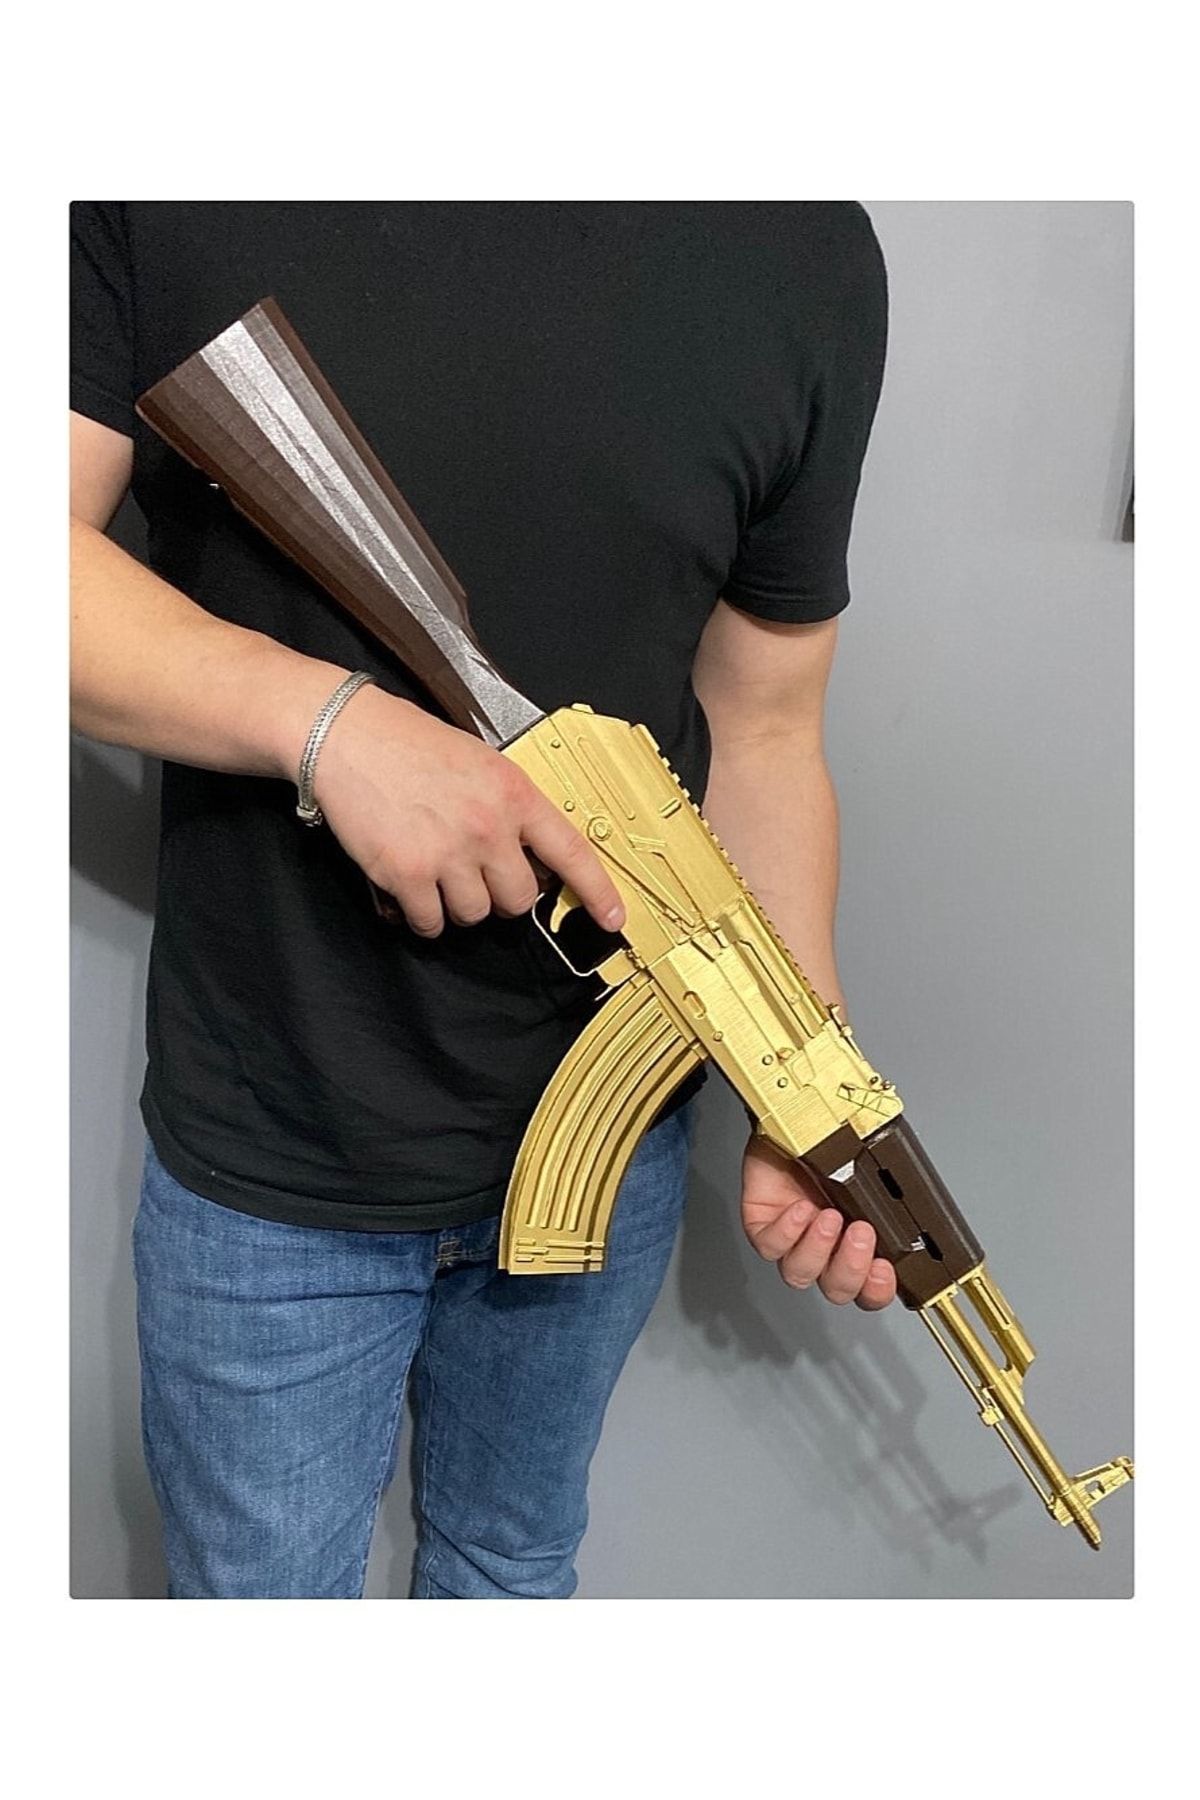 TuransoyCraft AK-47 Gold Kalashnikov DEKOR 1/1 ÖLÇEK GERÇEK BOY (OYUNCAK DEĞİLDİR ÇALIŞMAZ DEKORDUR)